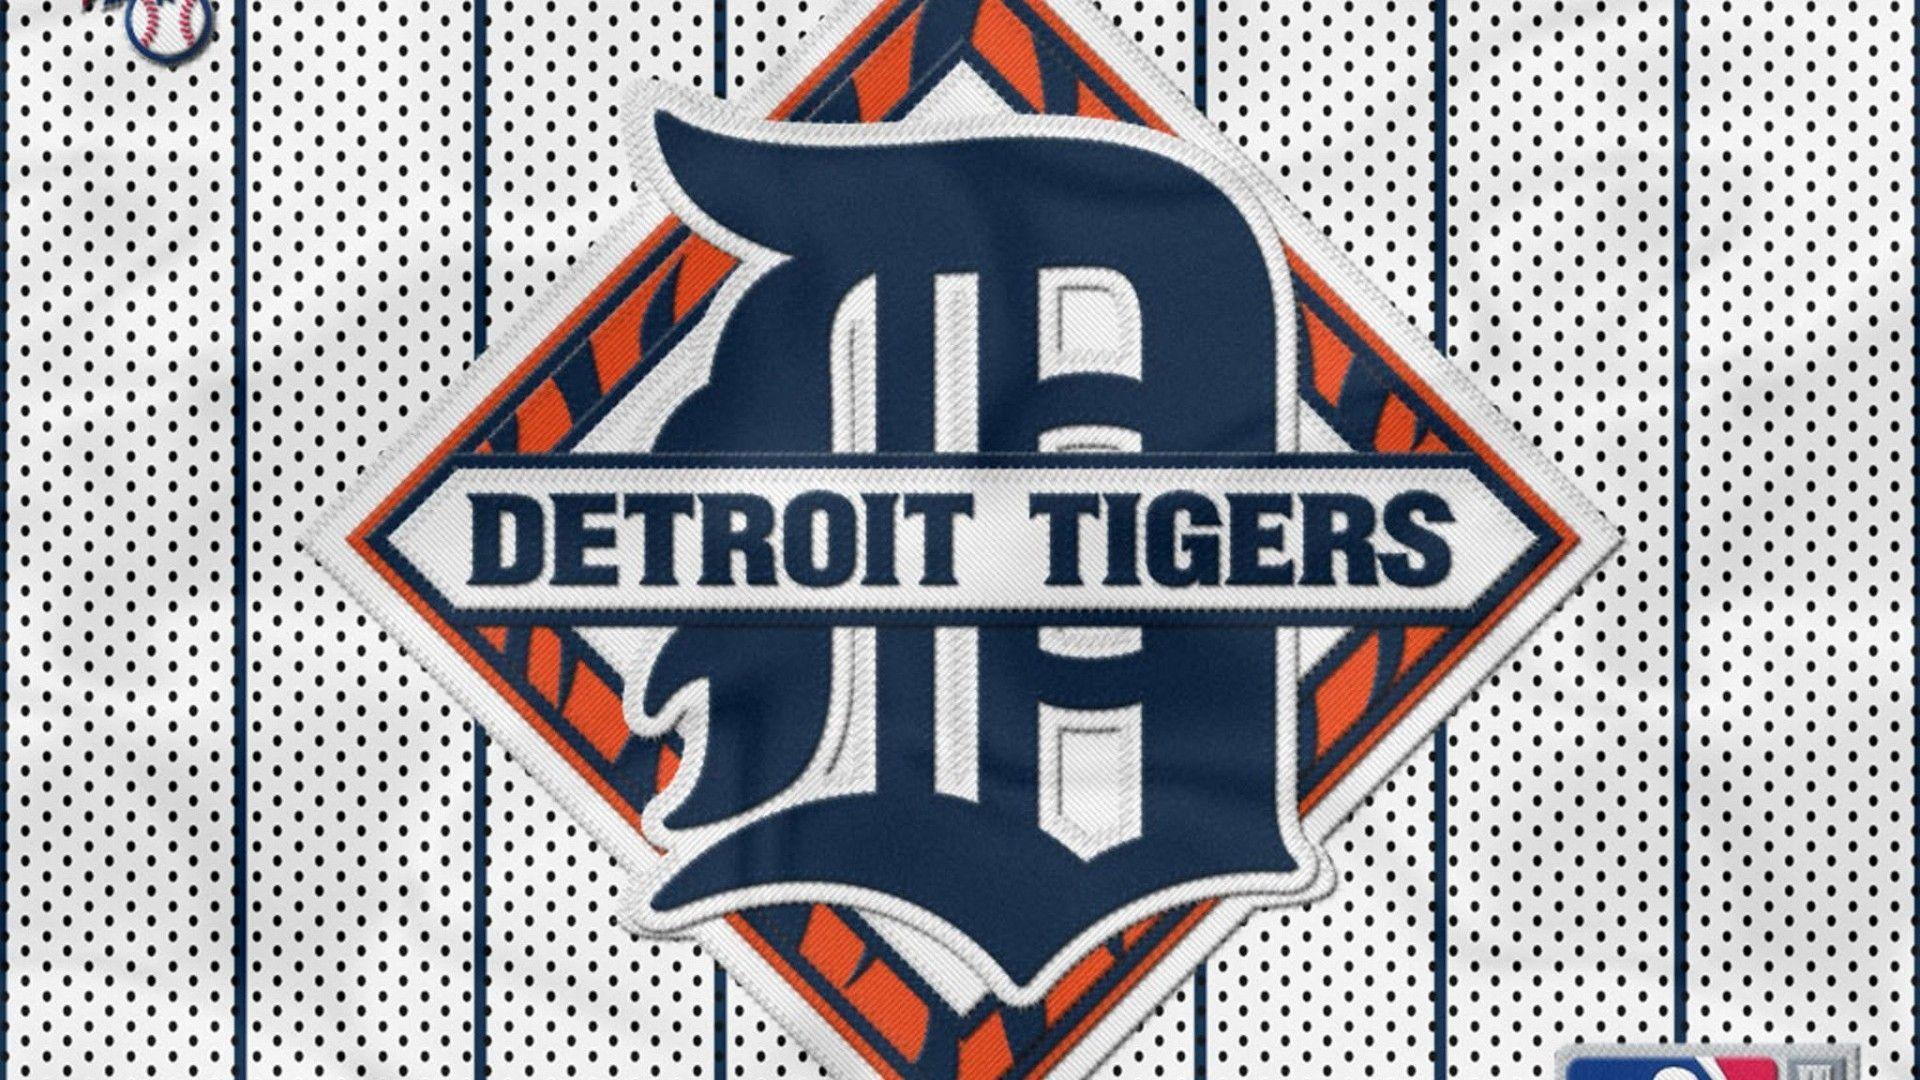 Detroit Tigers Wallpaper 1280×1024 Detroit tigers